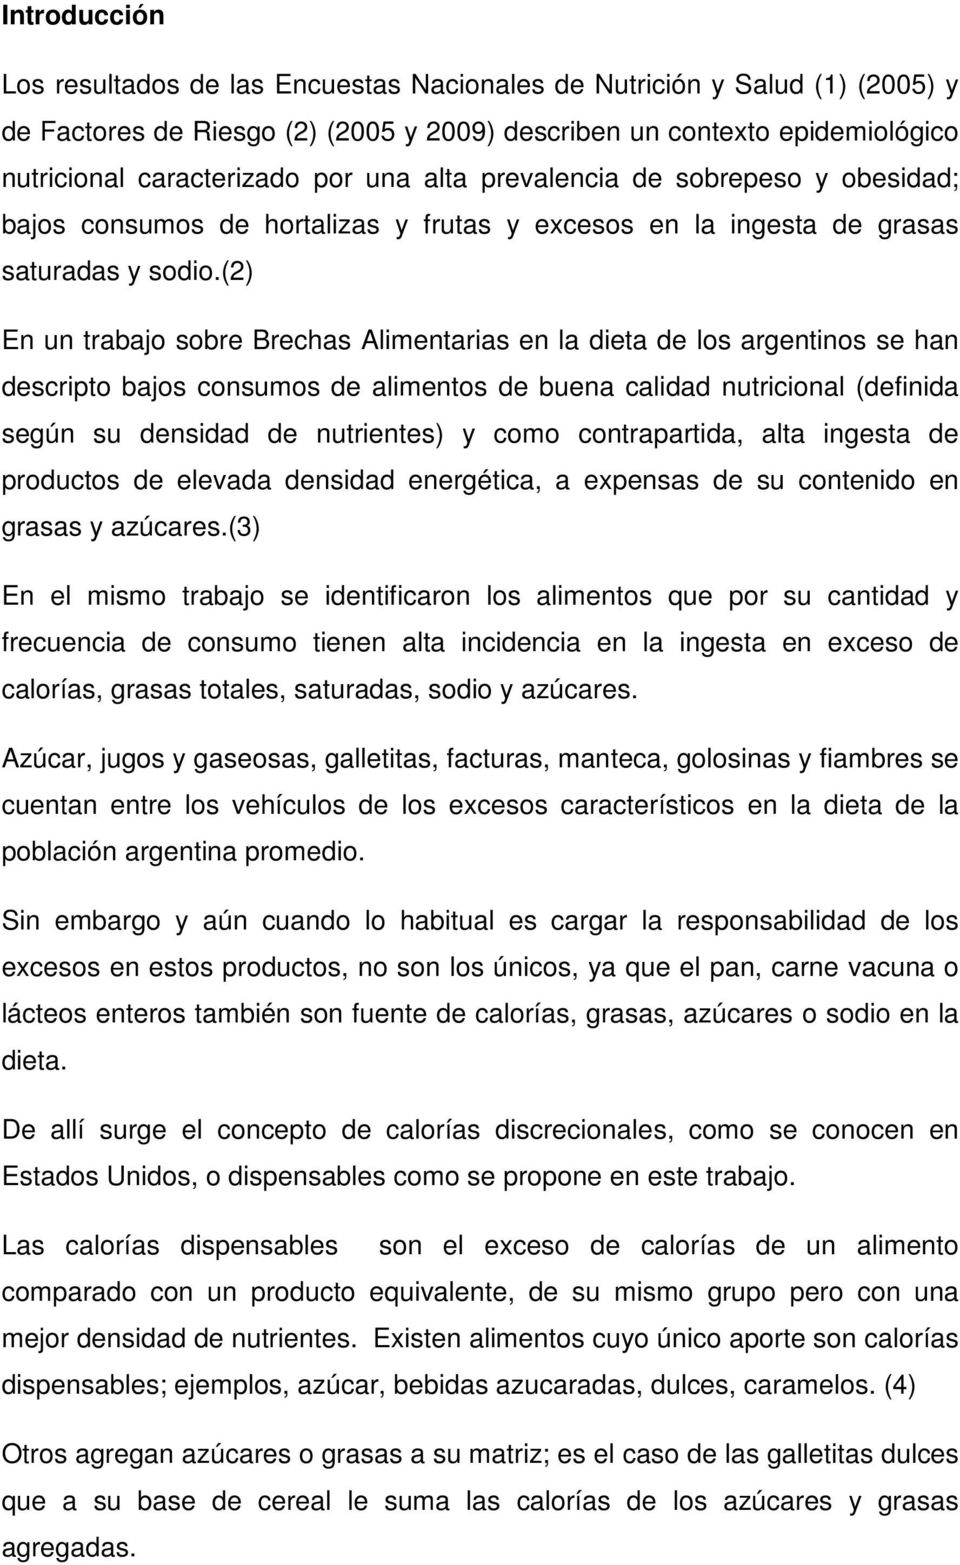 (2) En un trabajo sobre Brechas Alimentarias en la dieta de los argentinos se han descripto bajos consumos de alimentos de buena calidad nutricional (definida según su densidad de nutrientes) y como